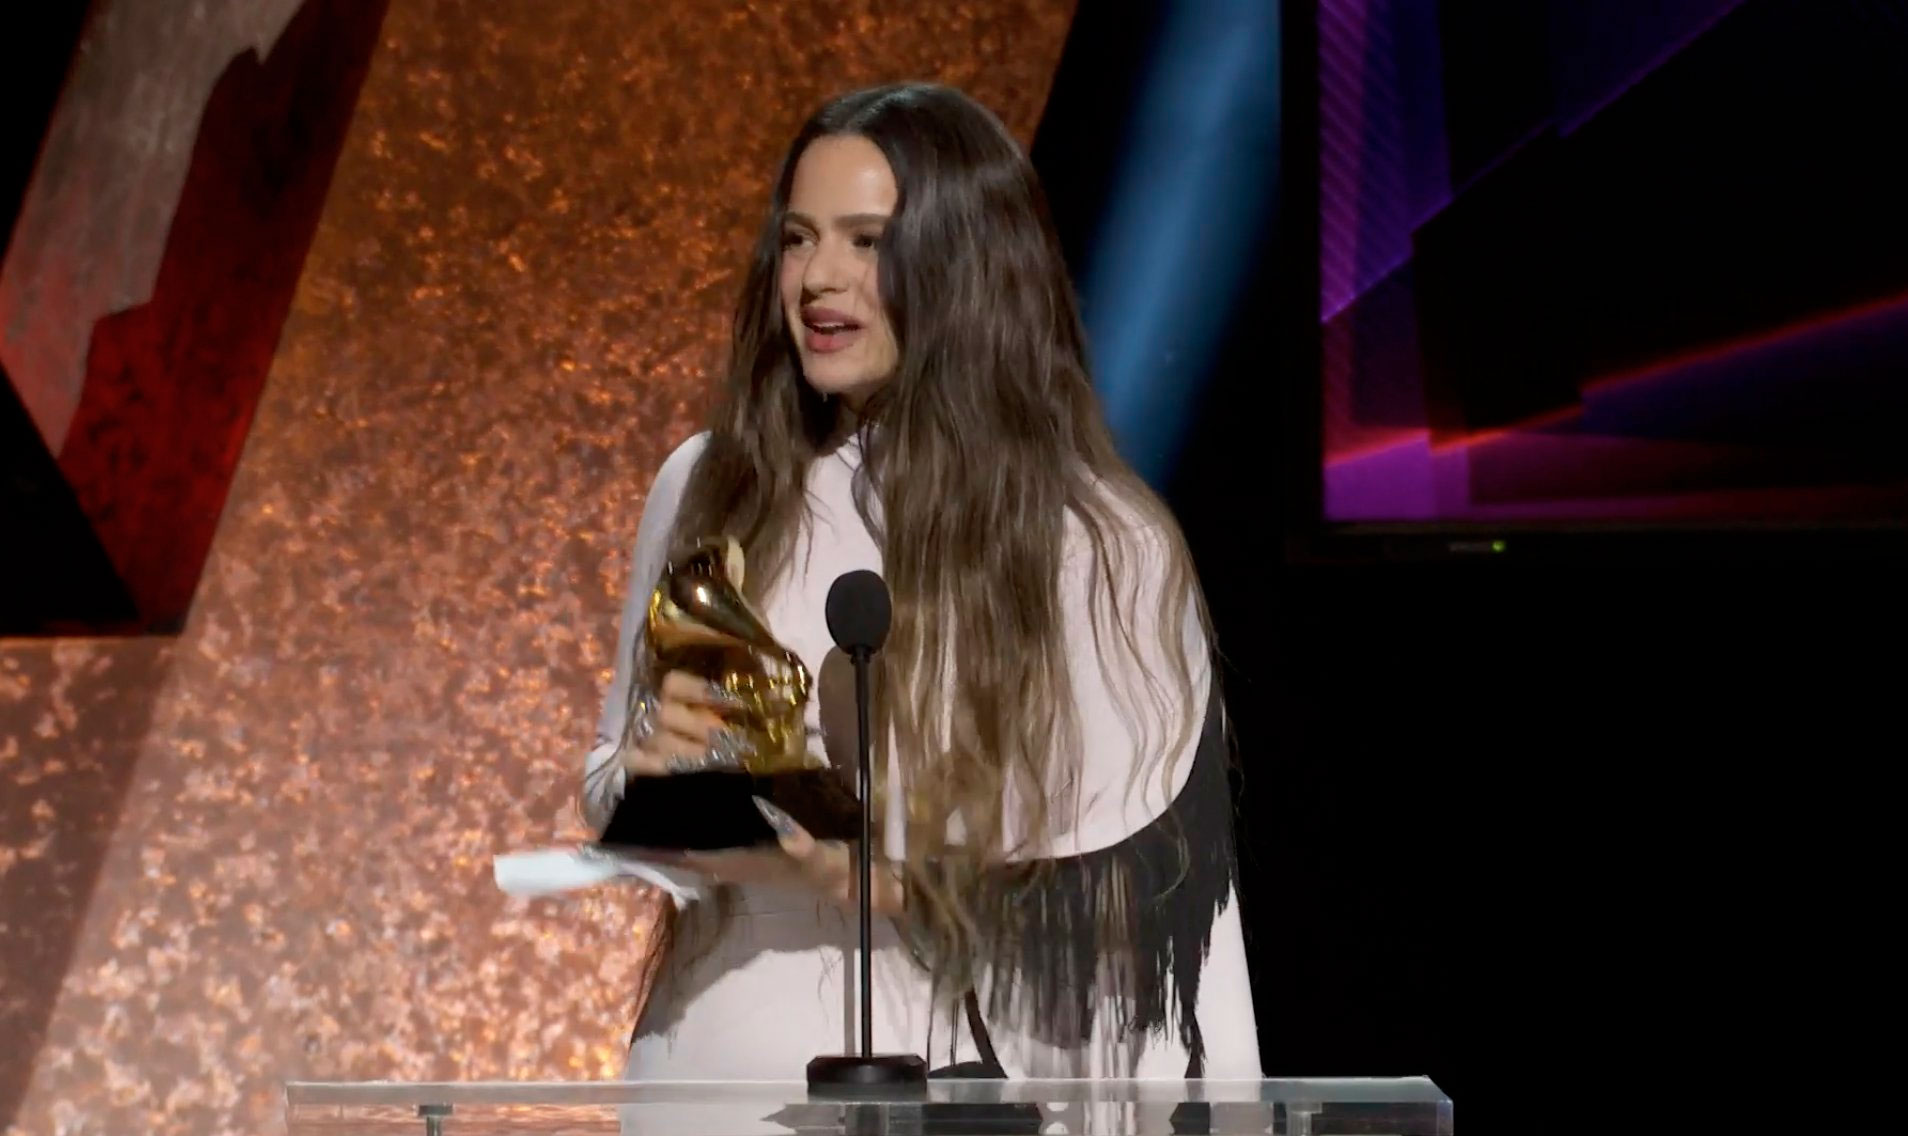 Rosalía gana un Grammy por 'El mal querer'